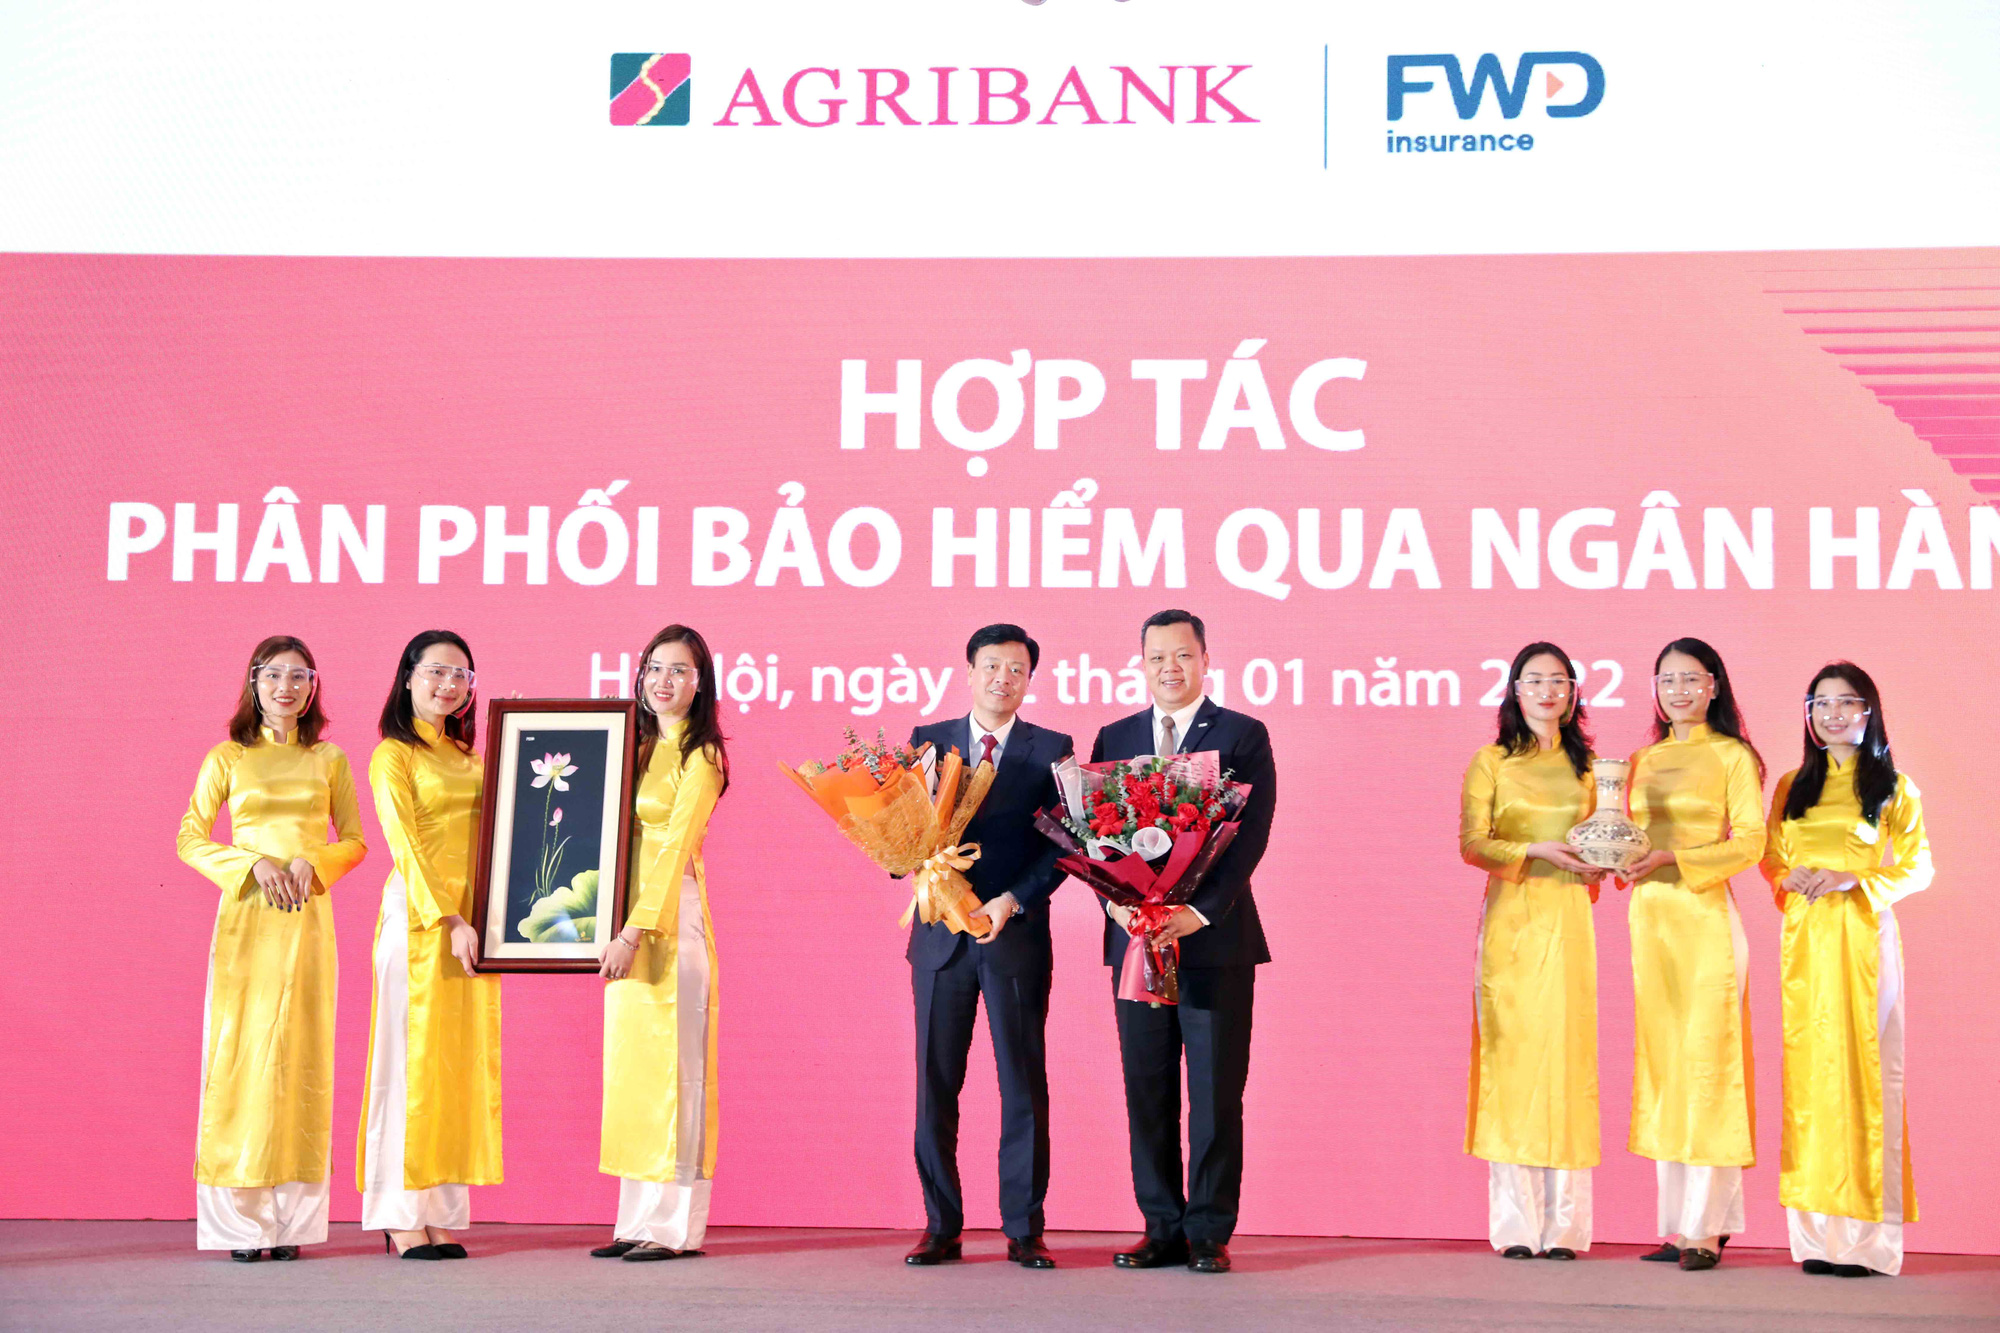 FWD Việt Nam triển khai hợp tác phân phối bảo hiểm qua ngân hàng - Ảnh 1.